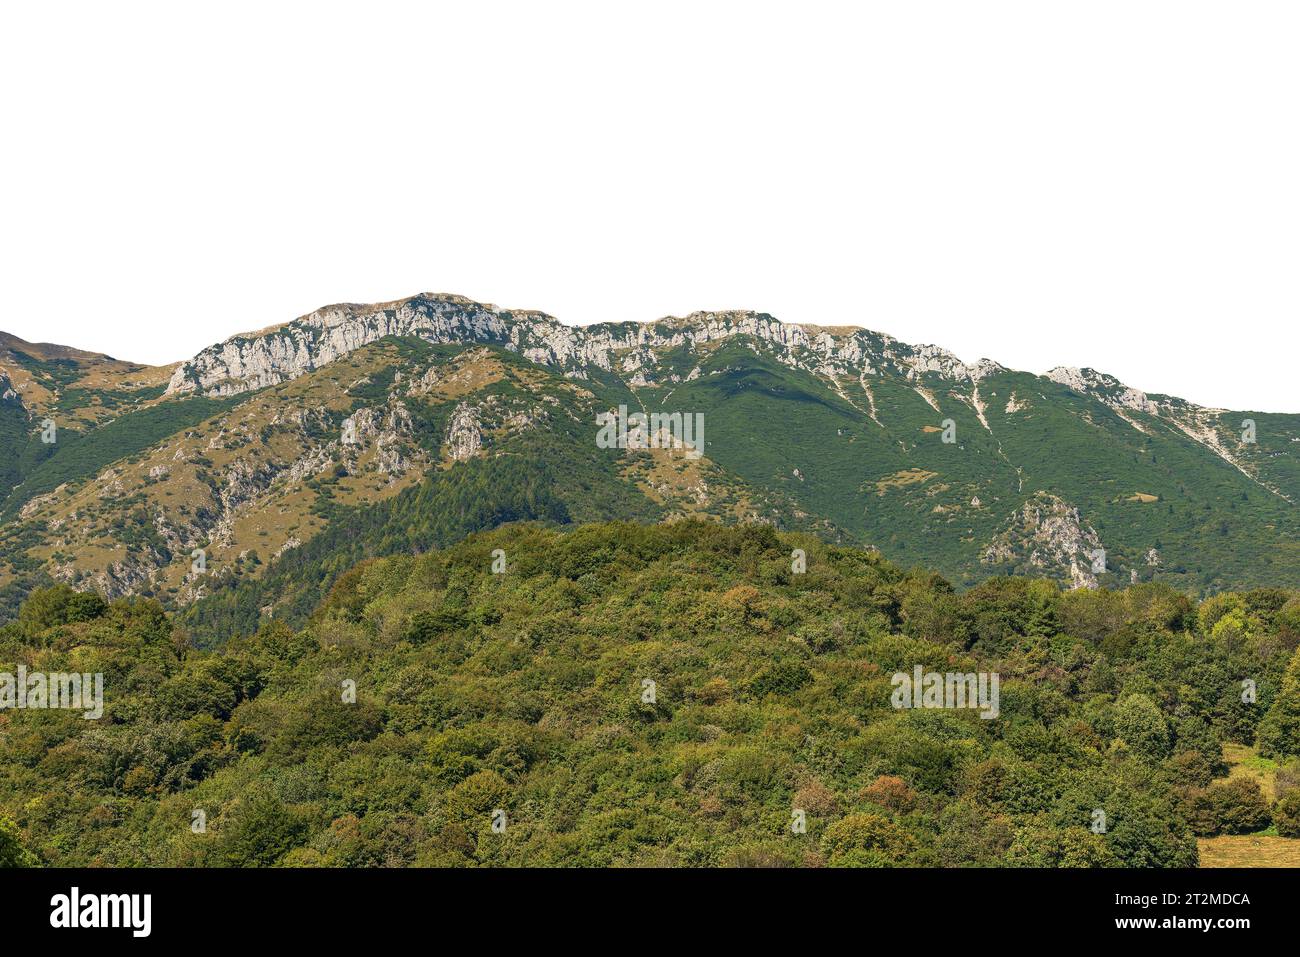 Vette montuose delle Alpi italiane isolate su sfondo bianco in estate. Monte Baldo (Monte Baldo), catena montuosa tra il Lago di Garda e la Valle dell'Adige Foto Stock